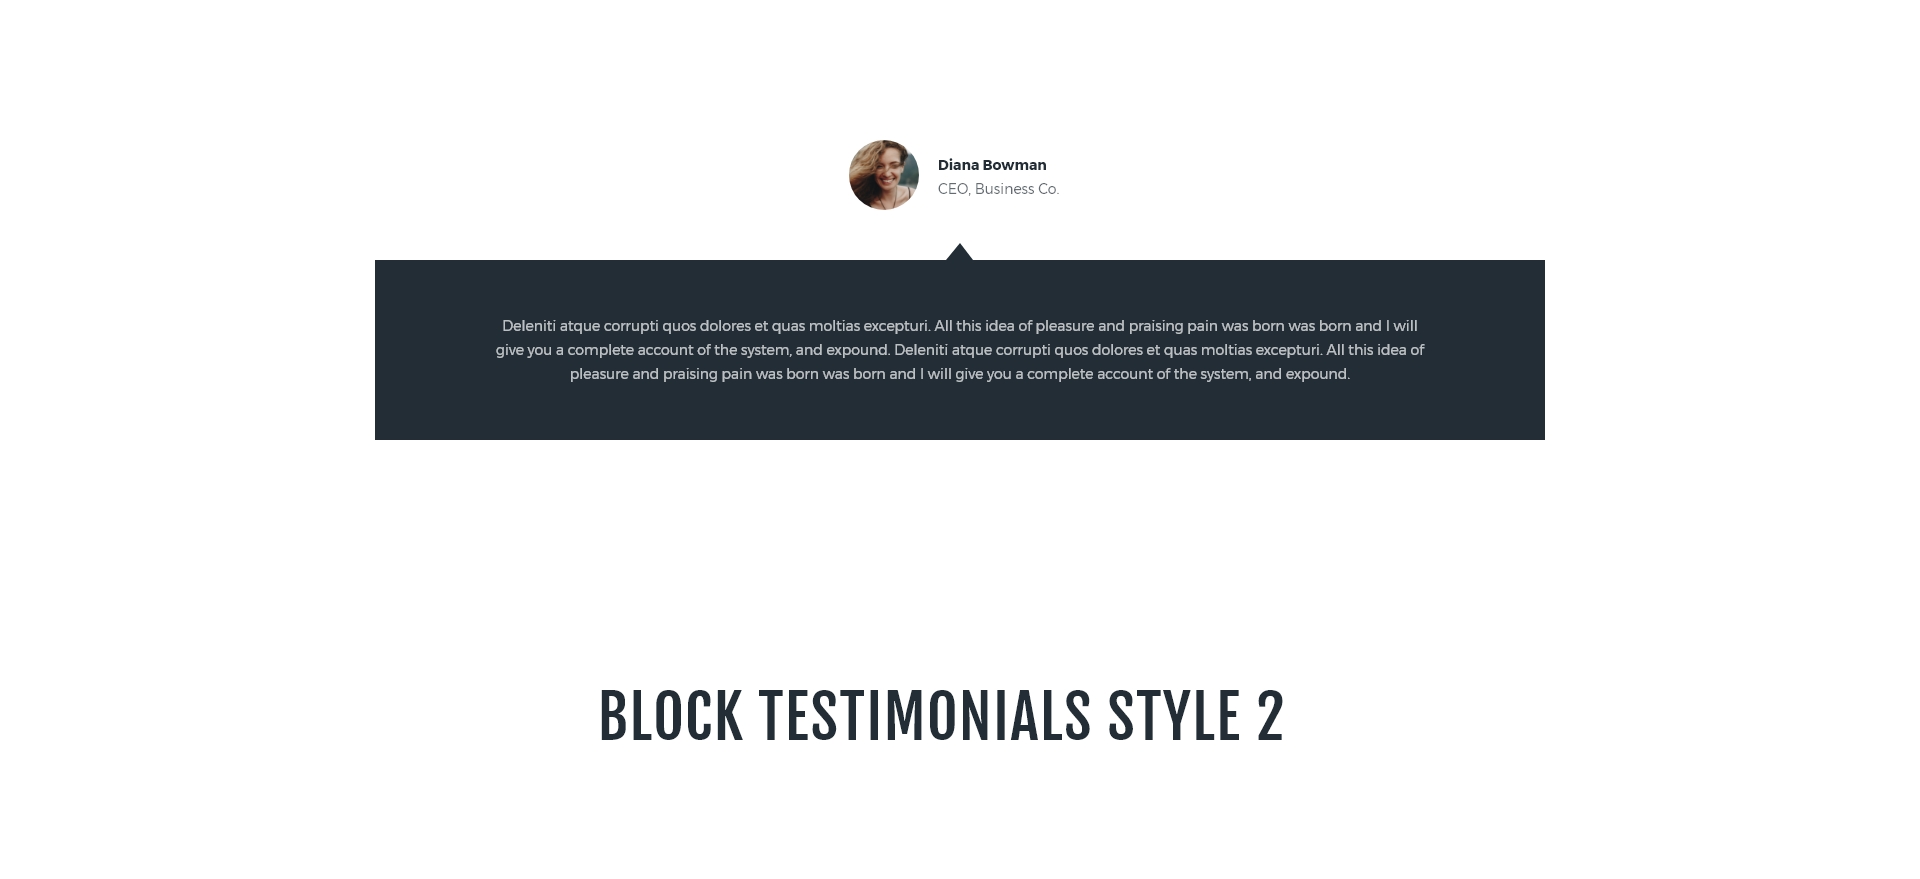 Block testimonials style 2